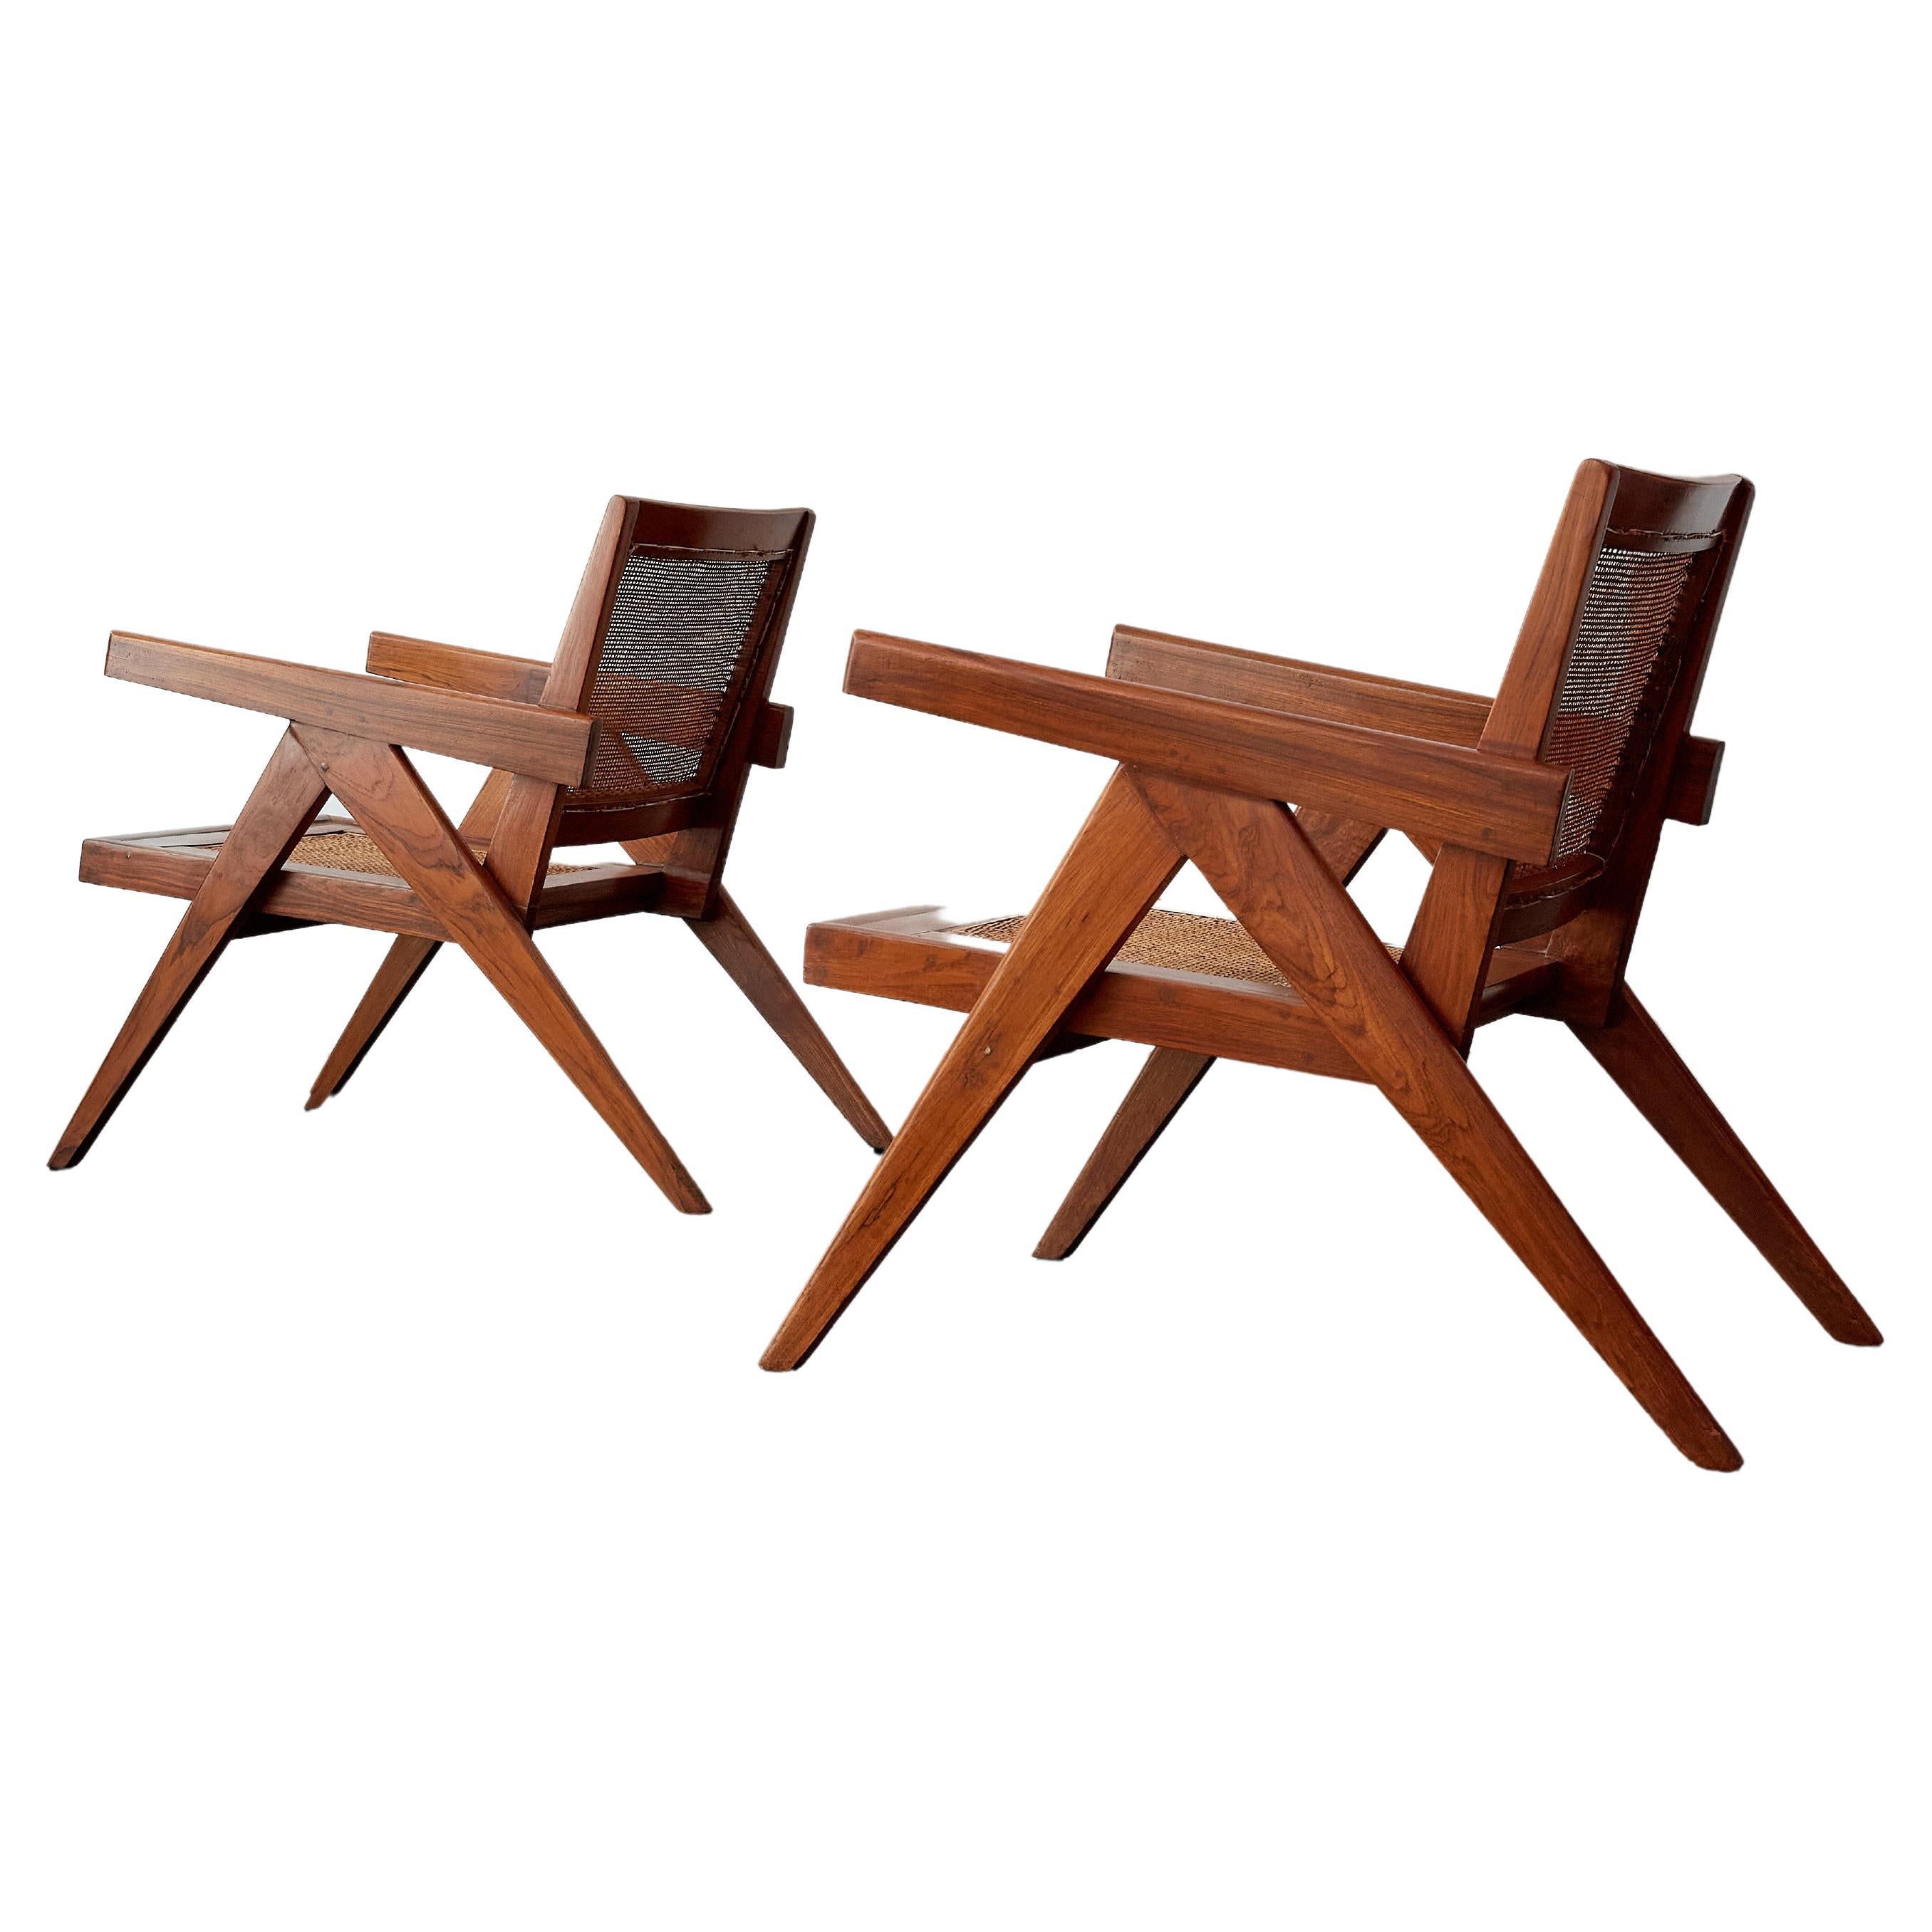 Unique Pair of Pierre Jeanneret Teak Lounge Chairs c. 1960